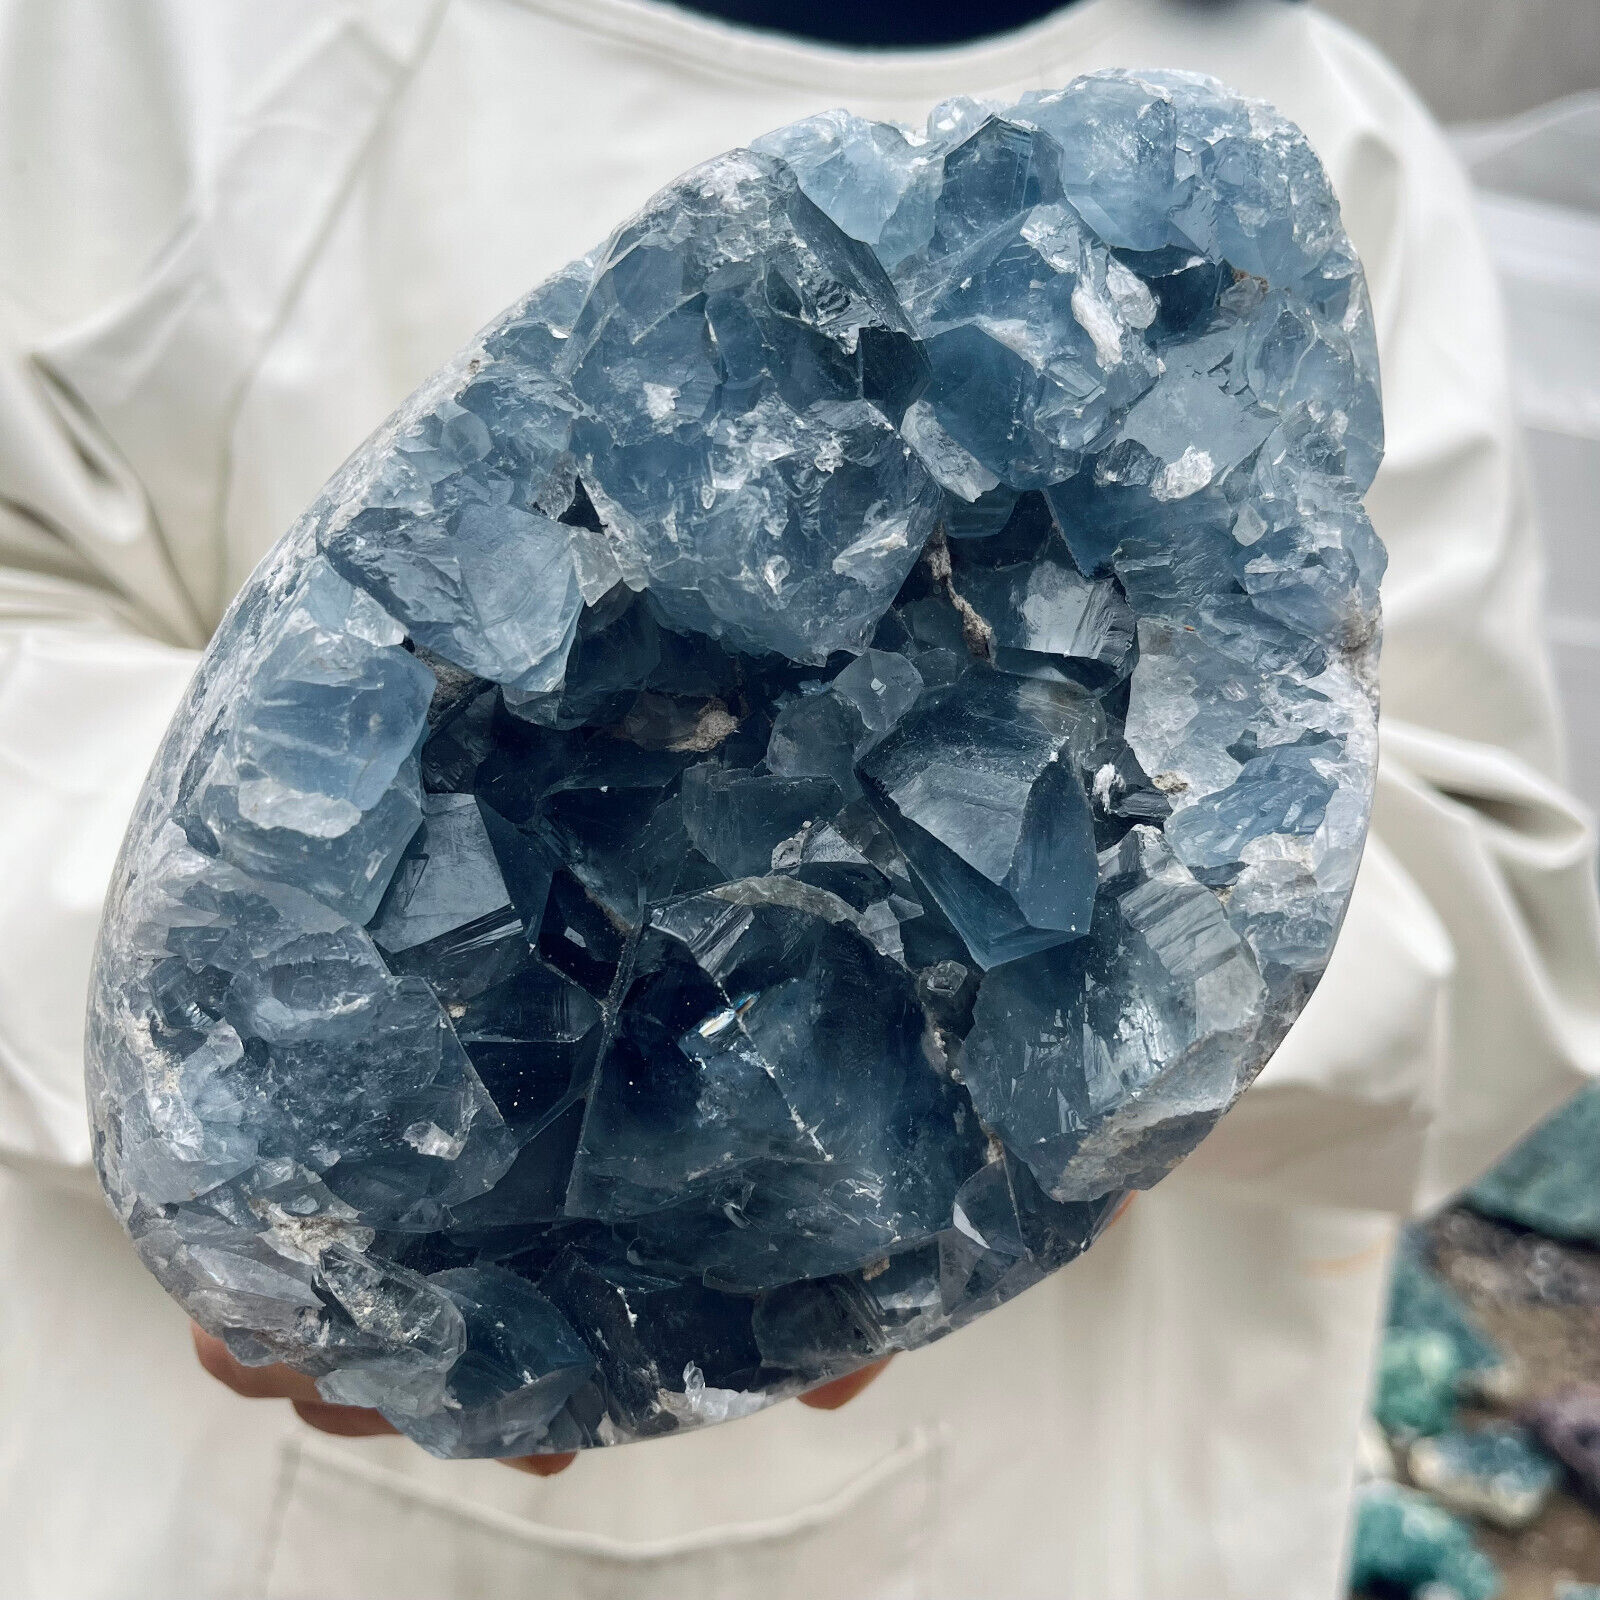 7.6lb Large Natural Blue Celestite Crystal Geode Quartz Cluster Mineral Specime